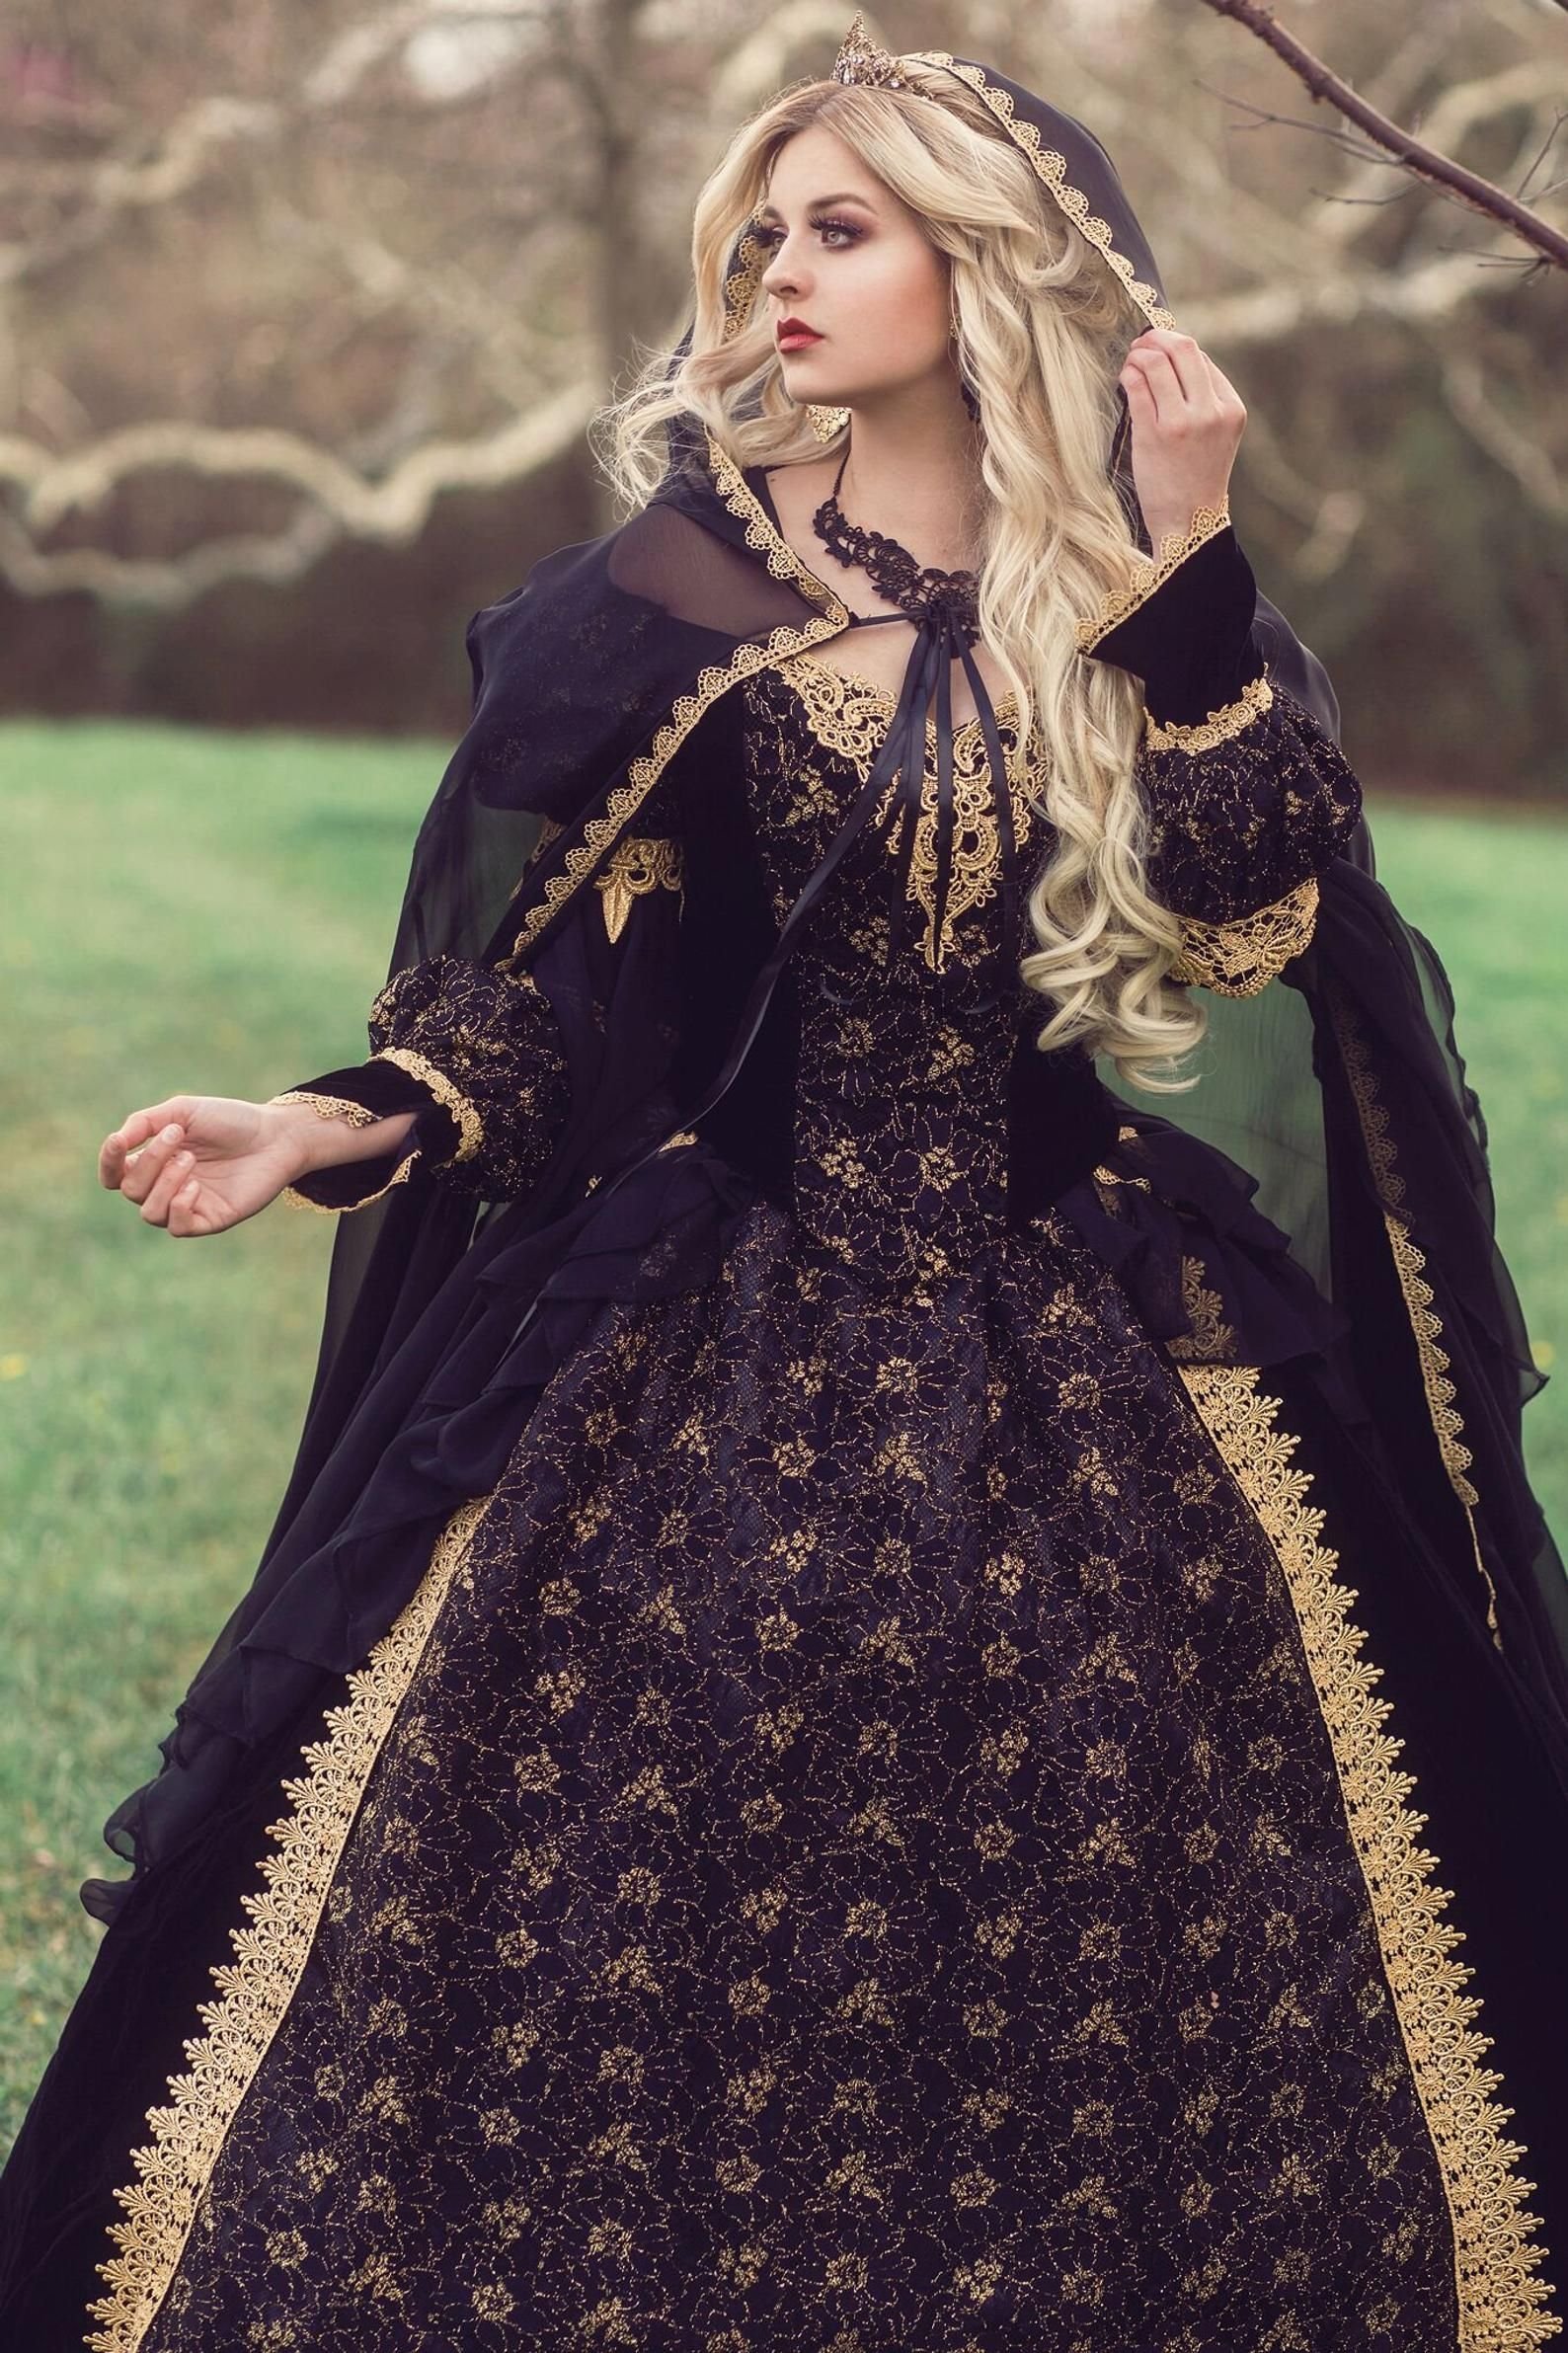 Cредневековые платья: женственный стиль минувших веков